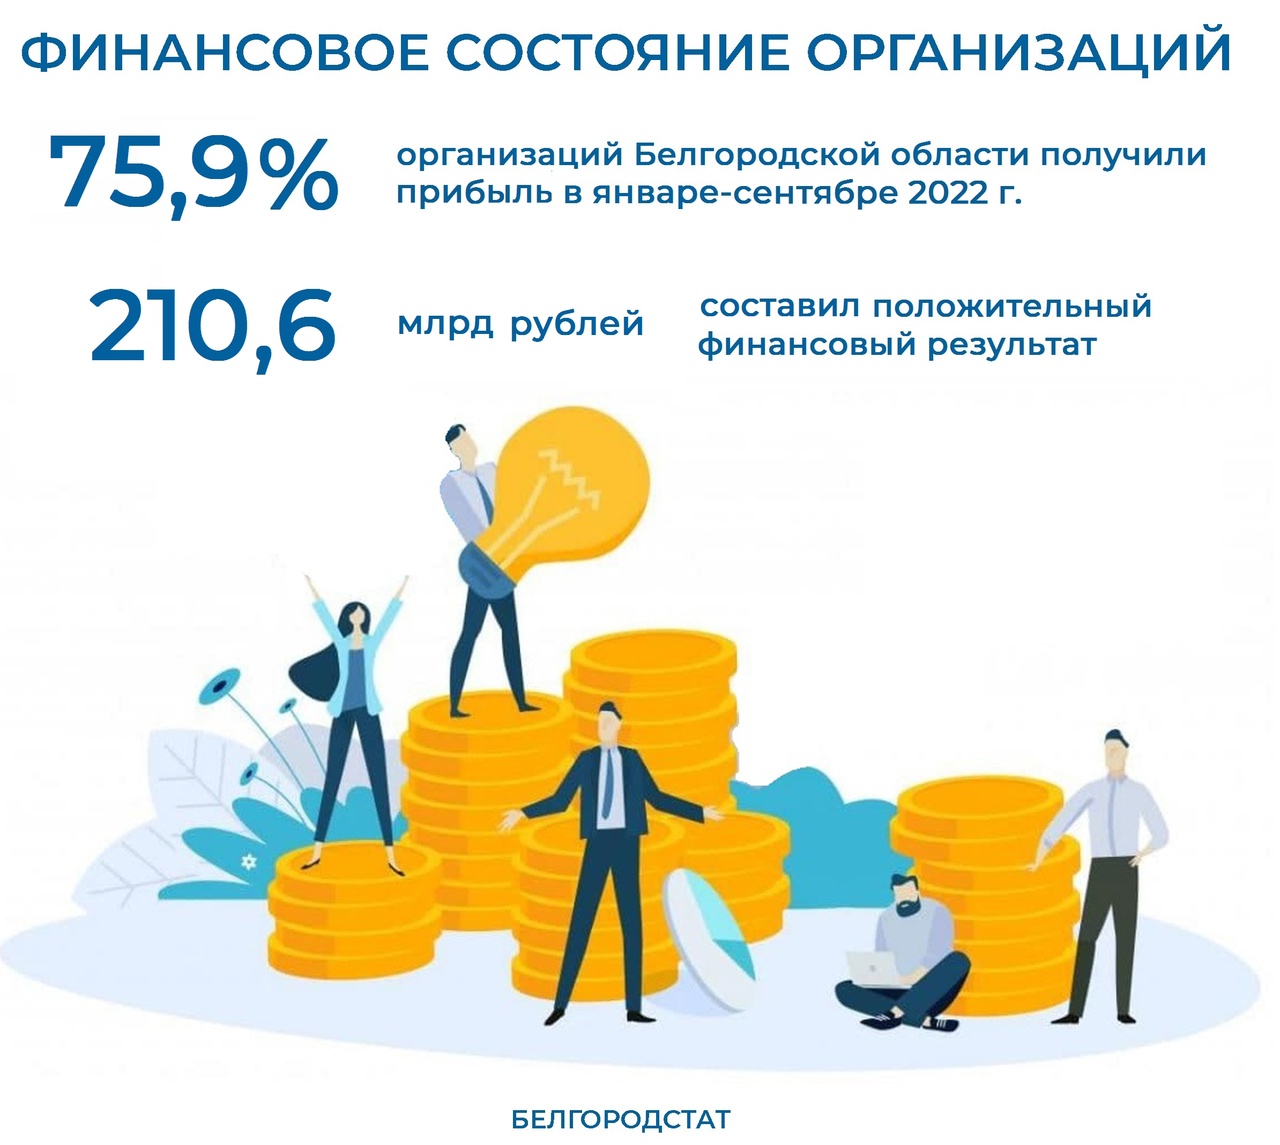 Финансовое состояние организаций Белгородской области